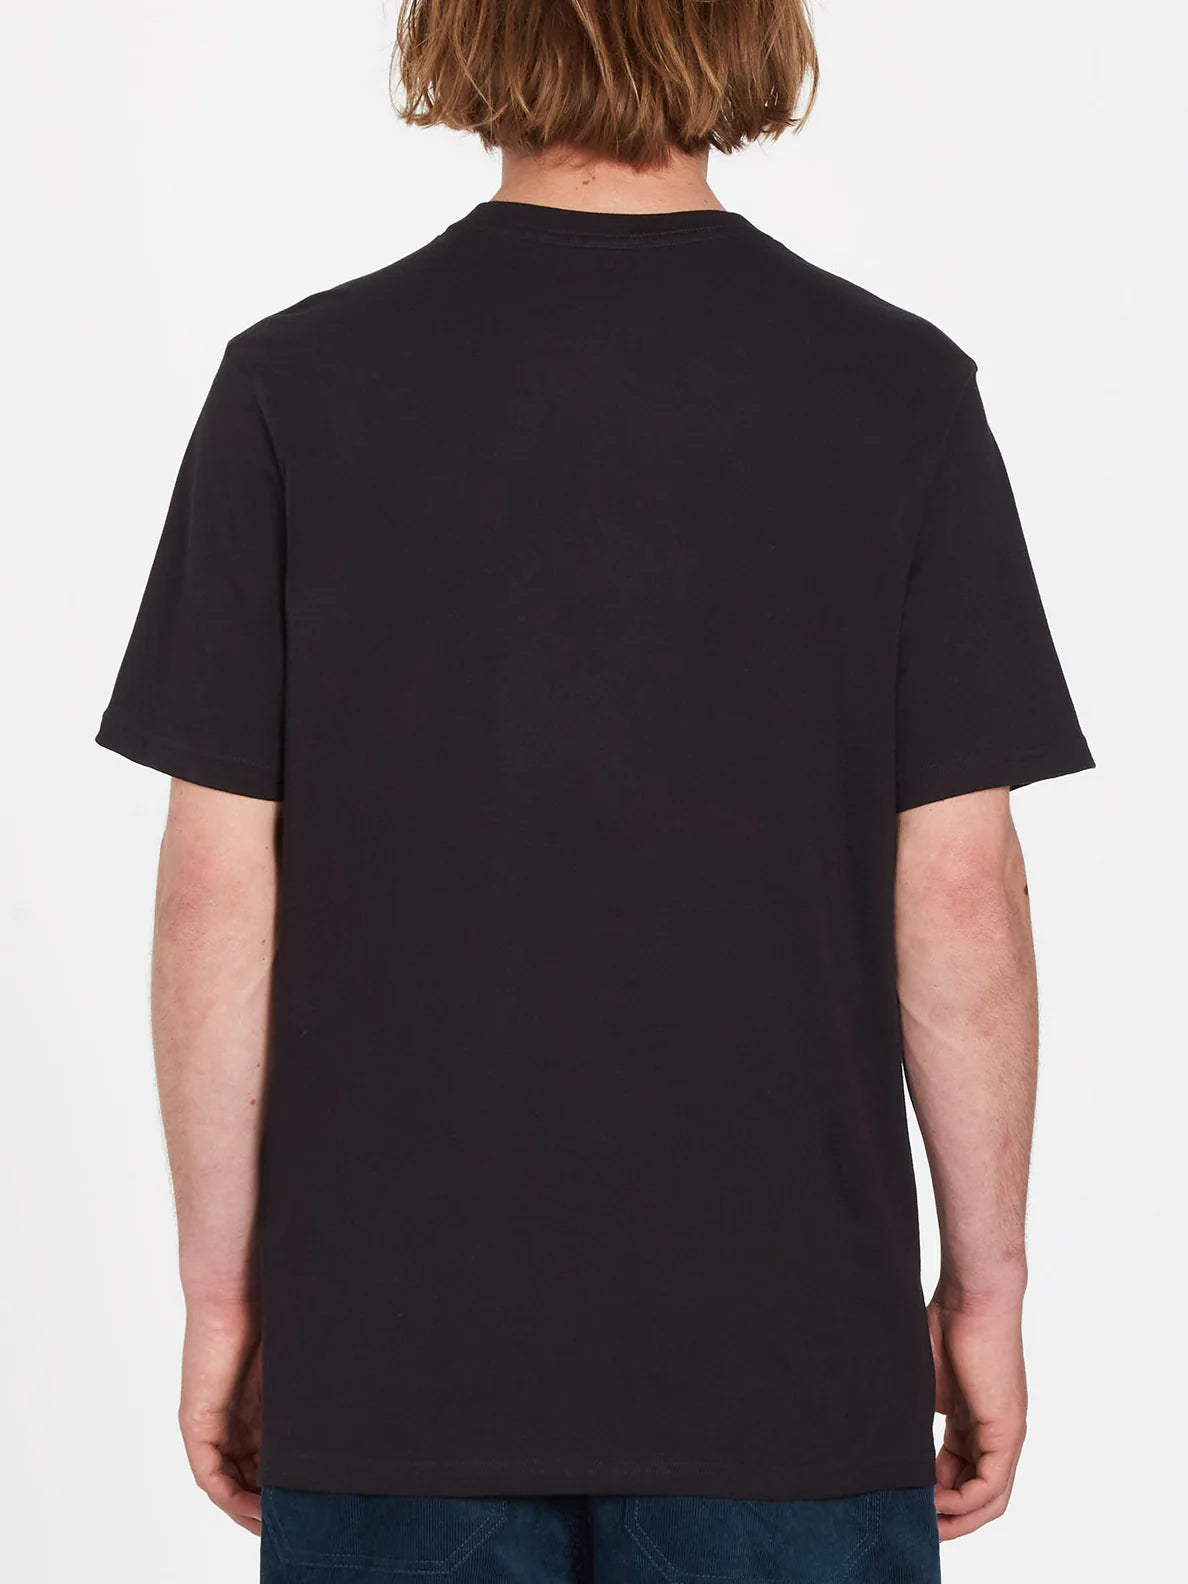 Camiseta Volcom Iconic Stone Black | Camisetas de hombre | Camisetas manga corta de hombre | Volcom Shop | surfdevils.com